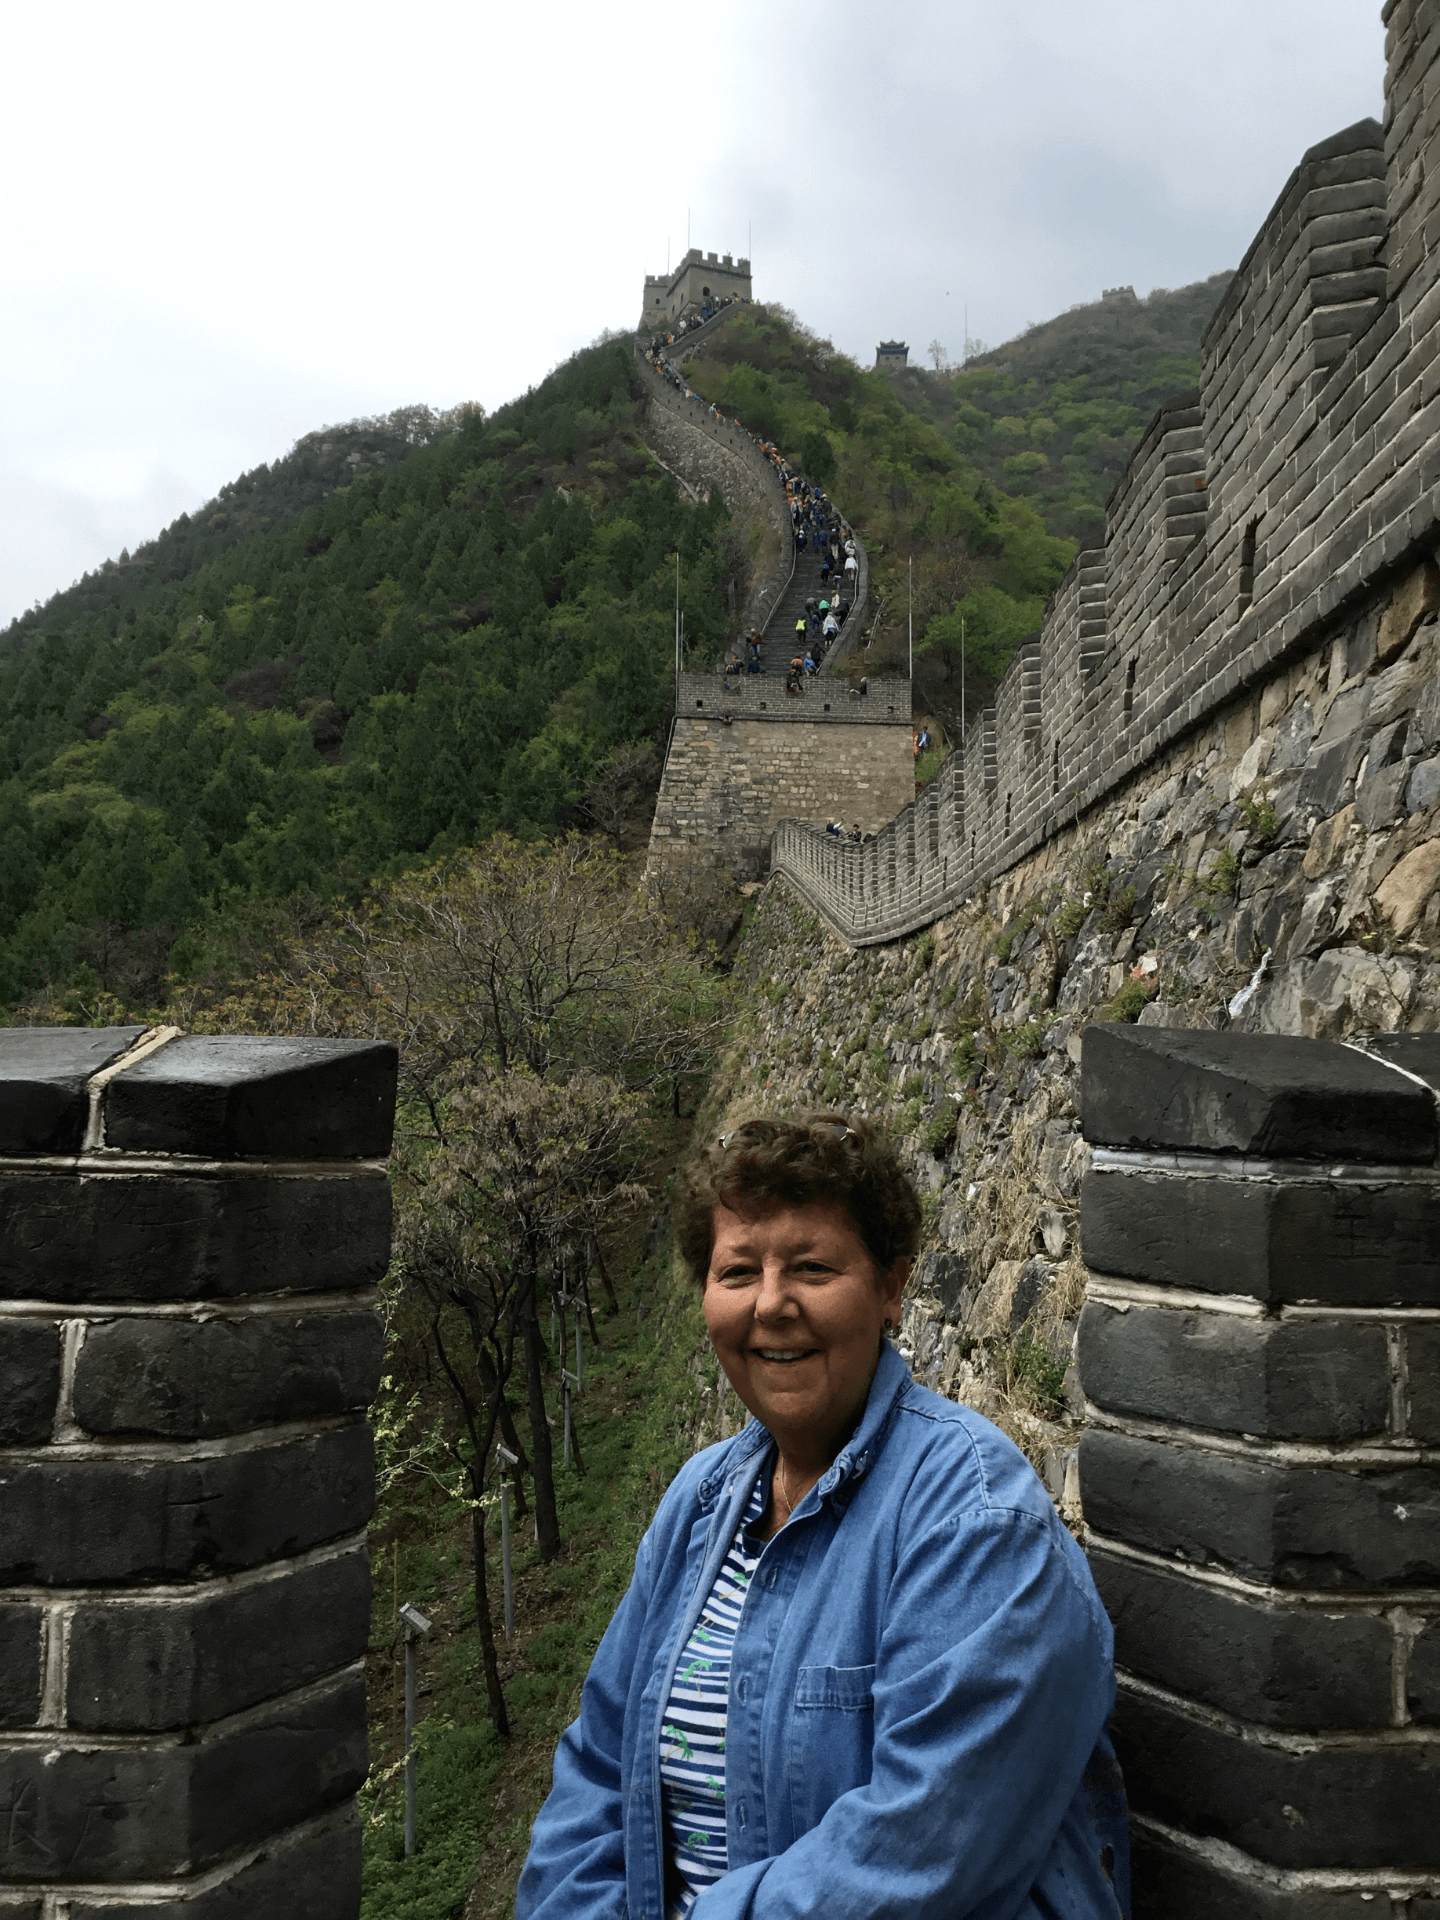 Deborah Graves at the Great Wall of China